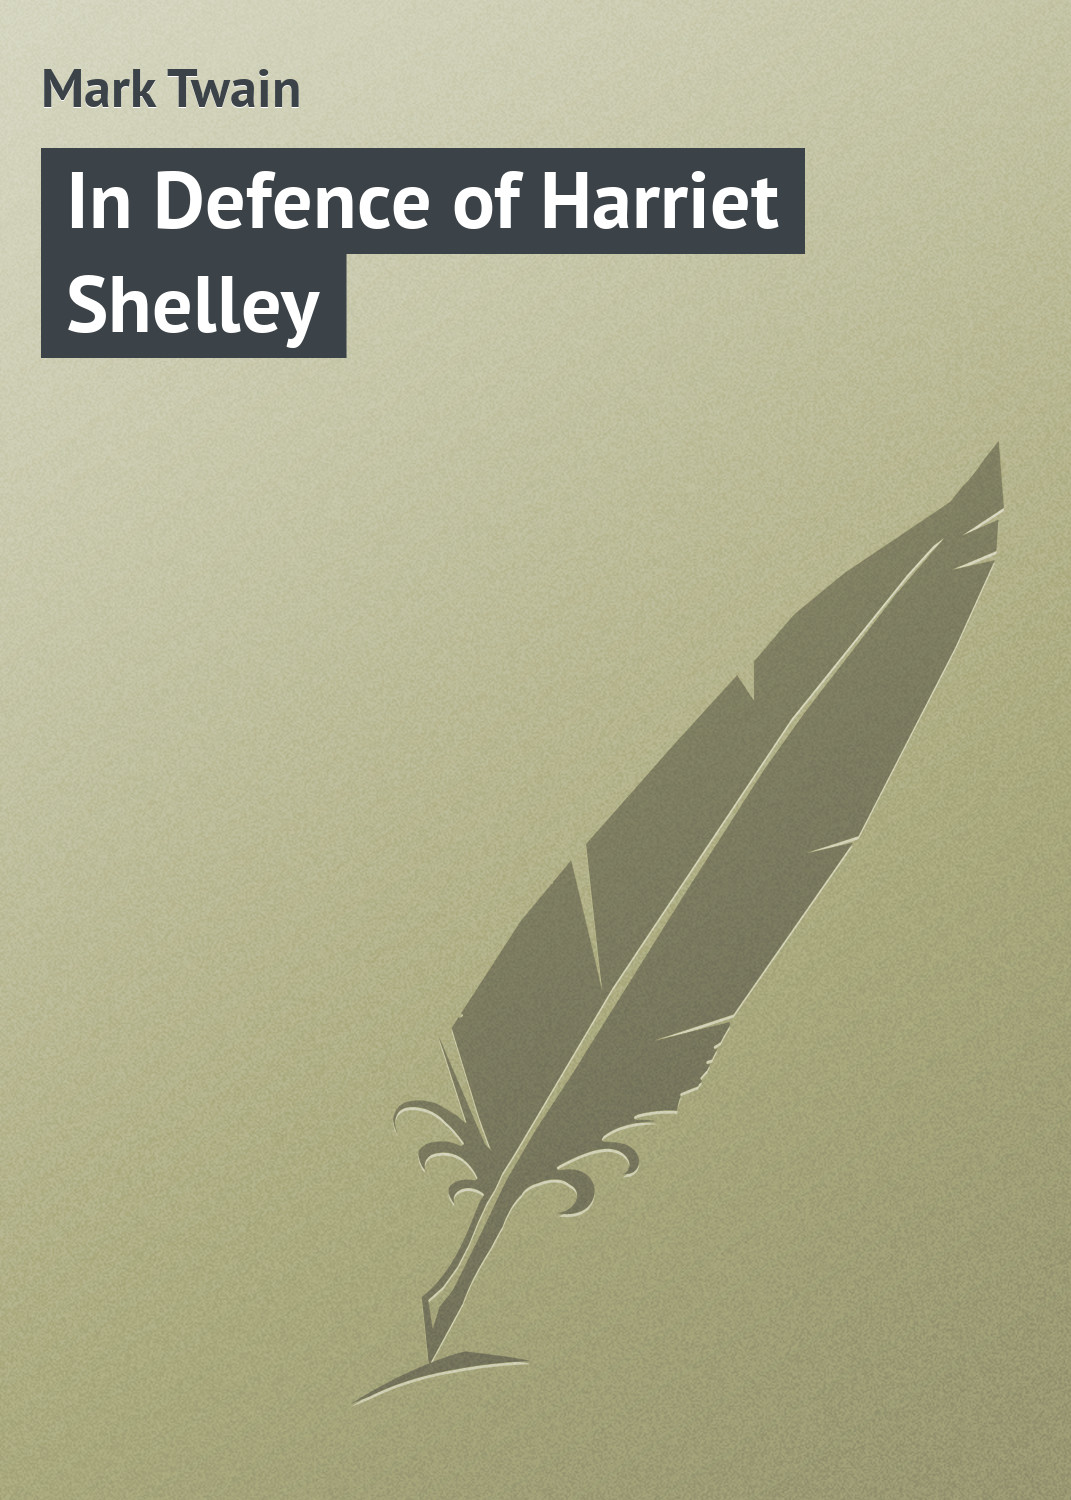 Книга In Defence of Harriet Shelley из серии , созданная Mark Twain, может относится к жанру Зарубежная классика. Стоимость электронной книги In Defence of Harriet Shelley с идентификатором 9366878 составляет 29.95 руб.